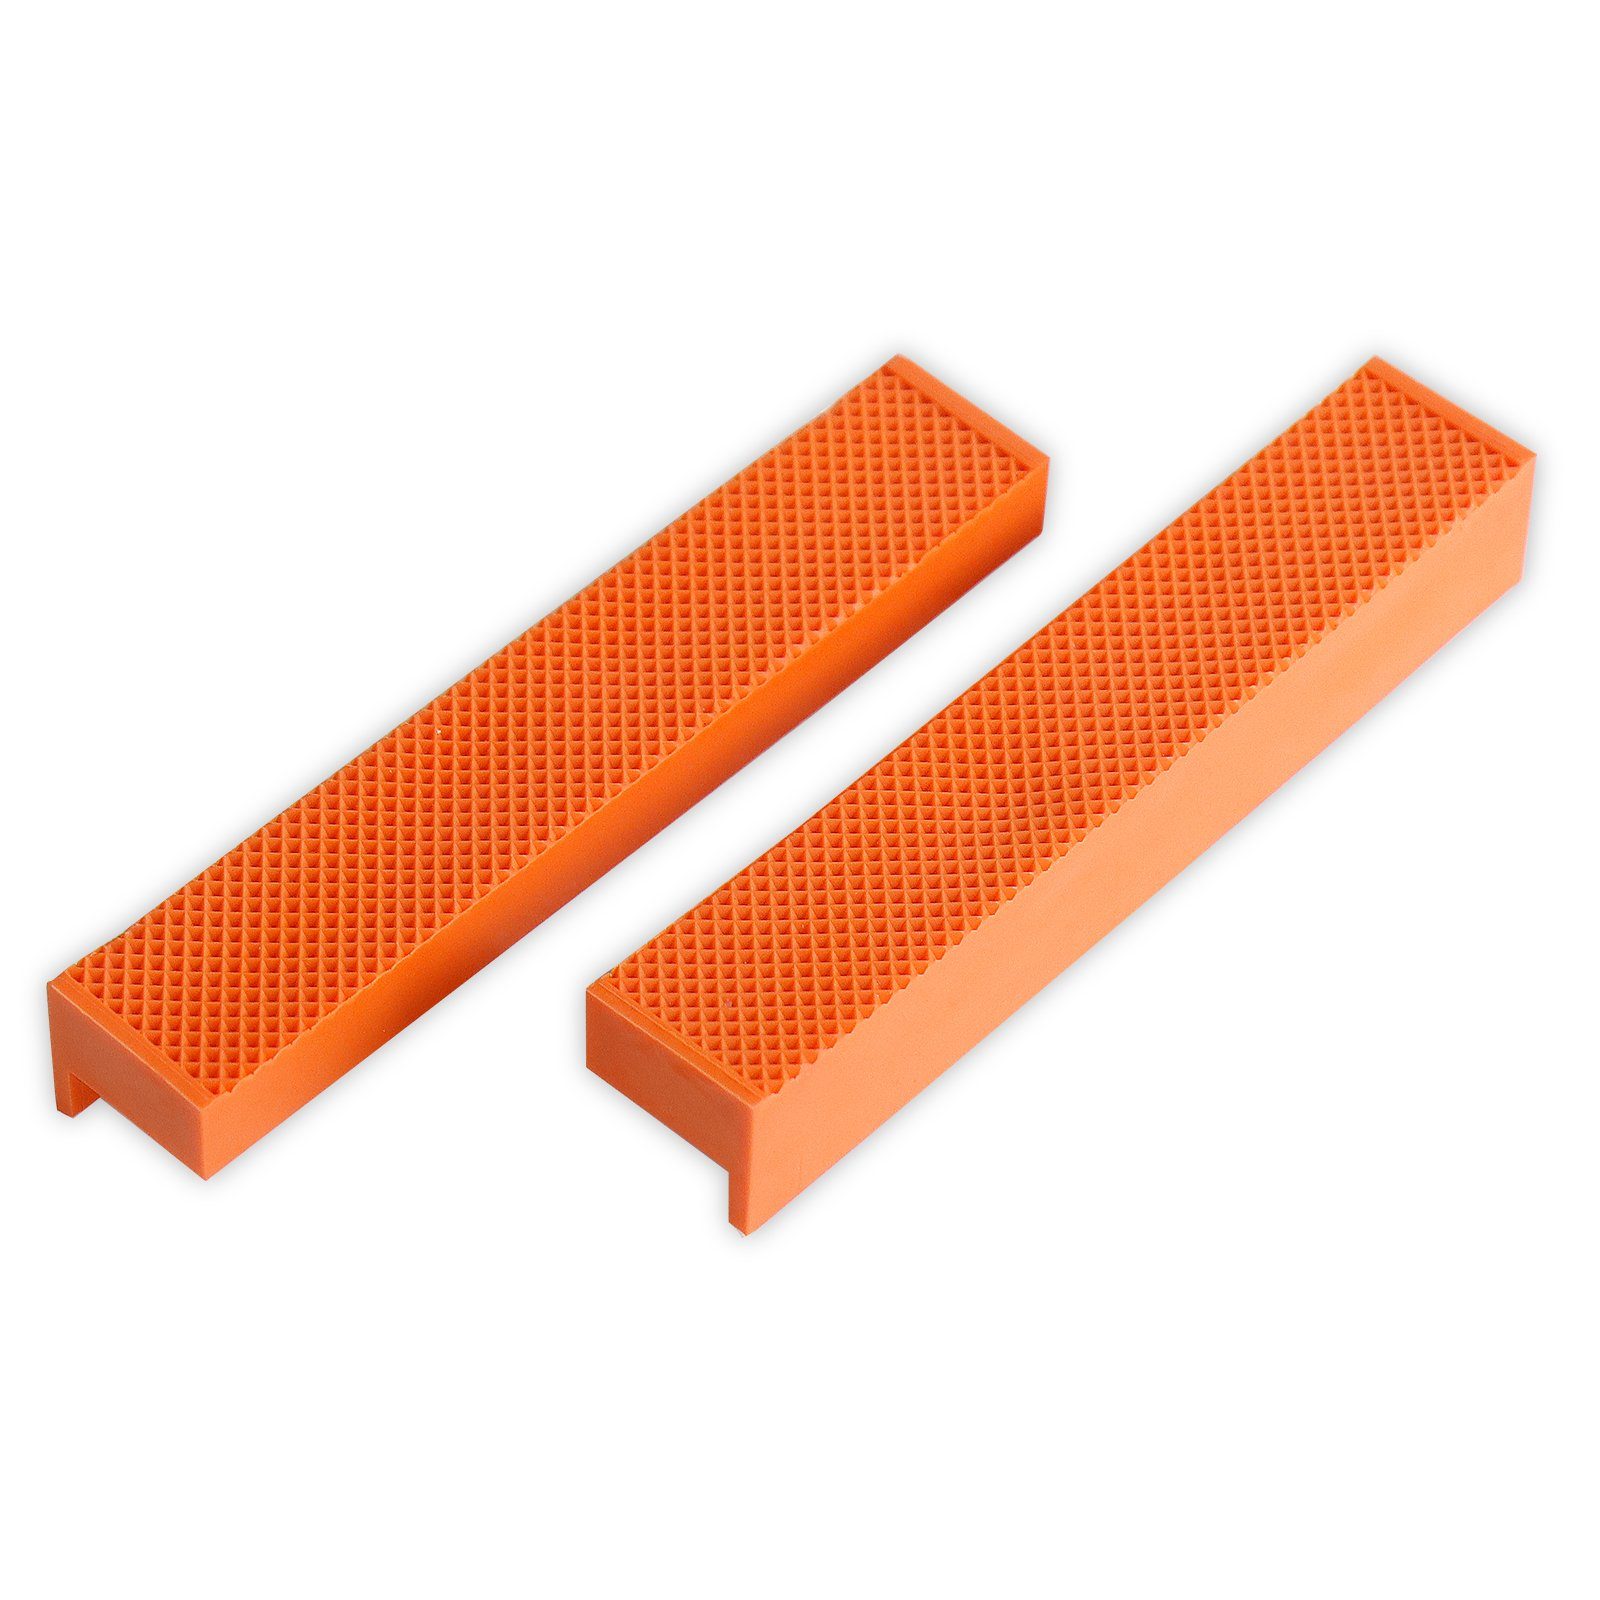 CCLIFE Schraubstock 2 tlg Schraubstock-Schutzbacken Breite 110mm / 150mm mit Magnet orange